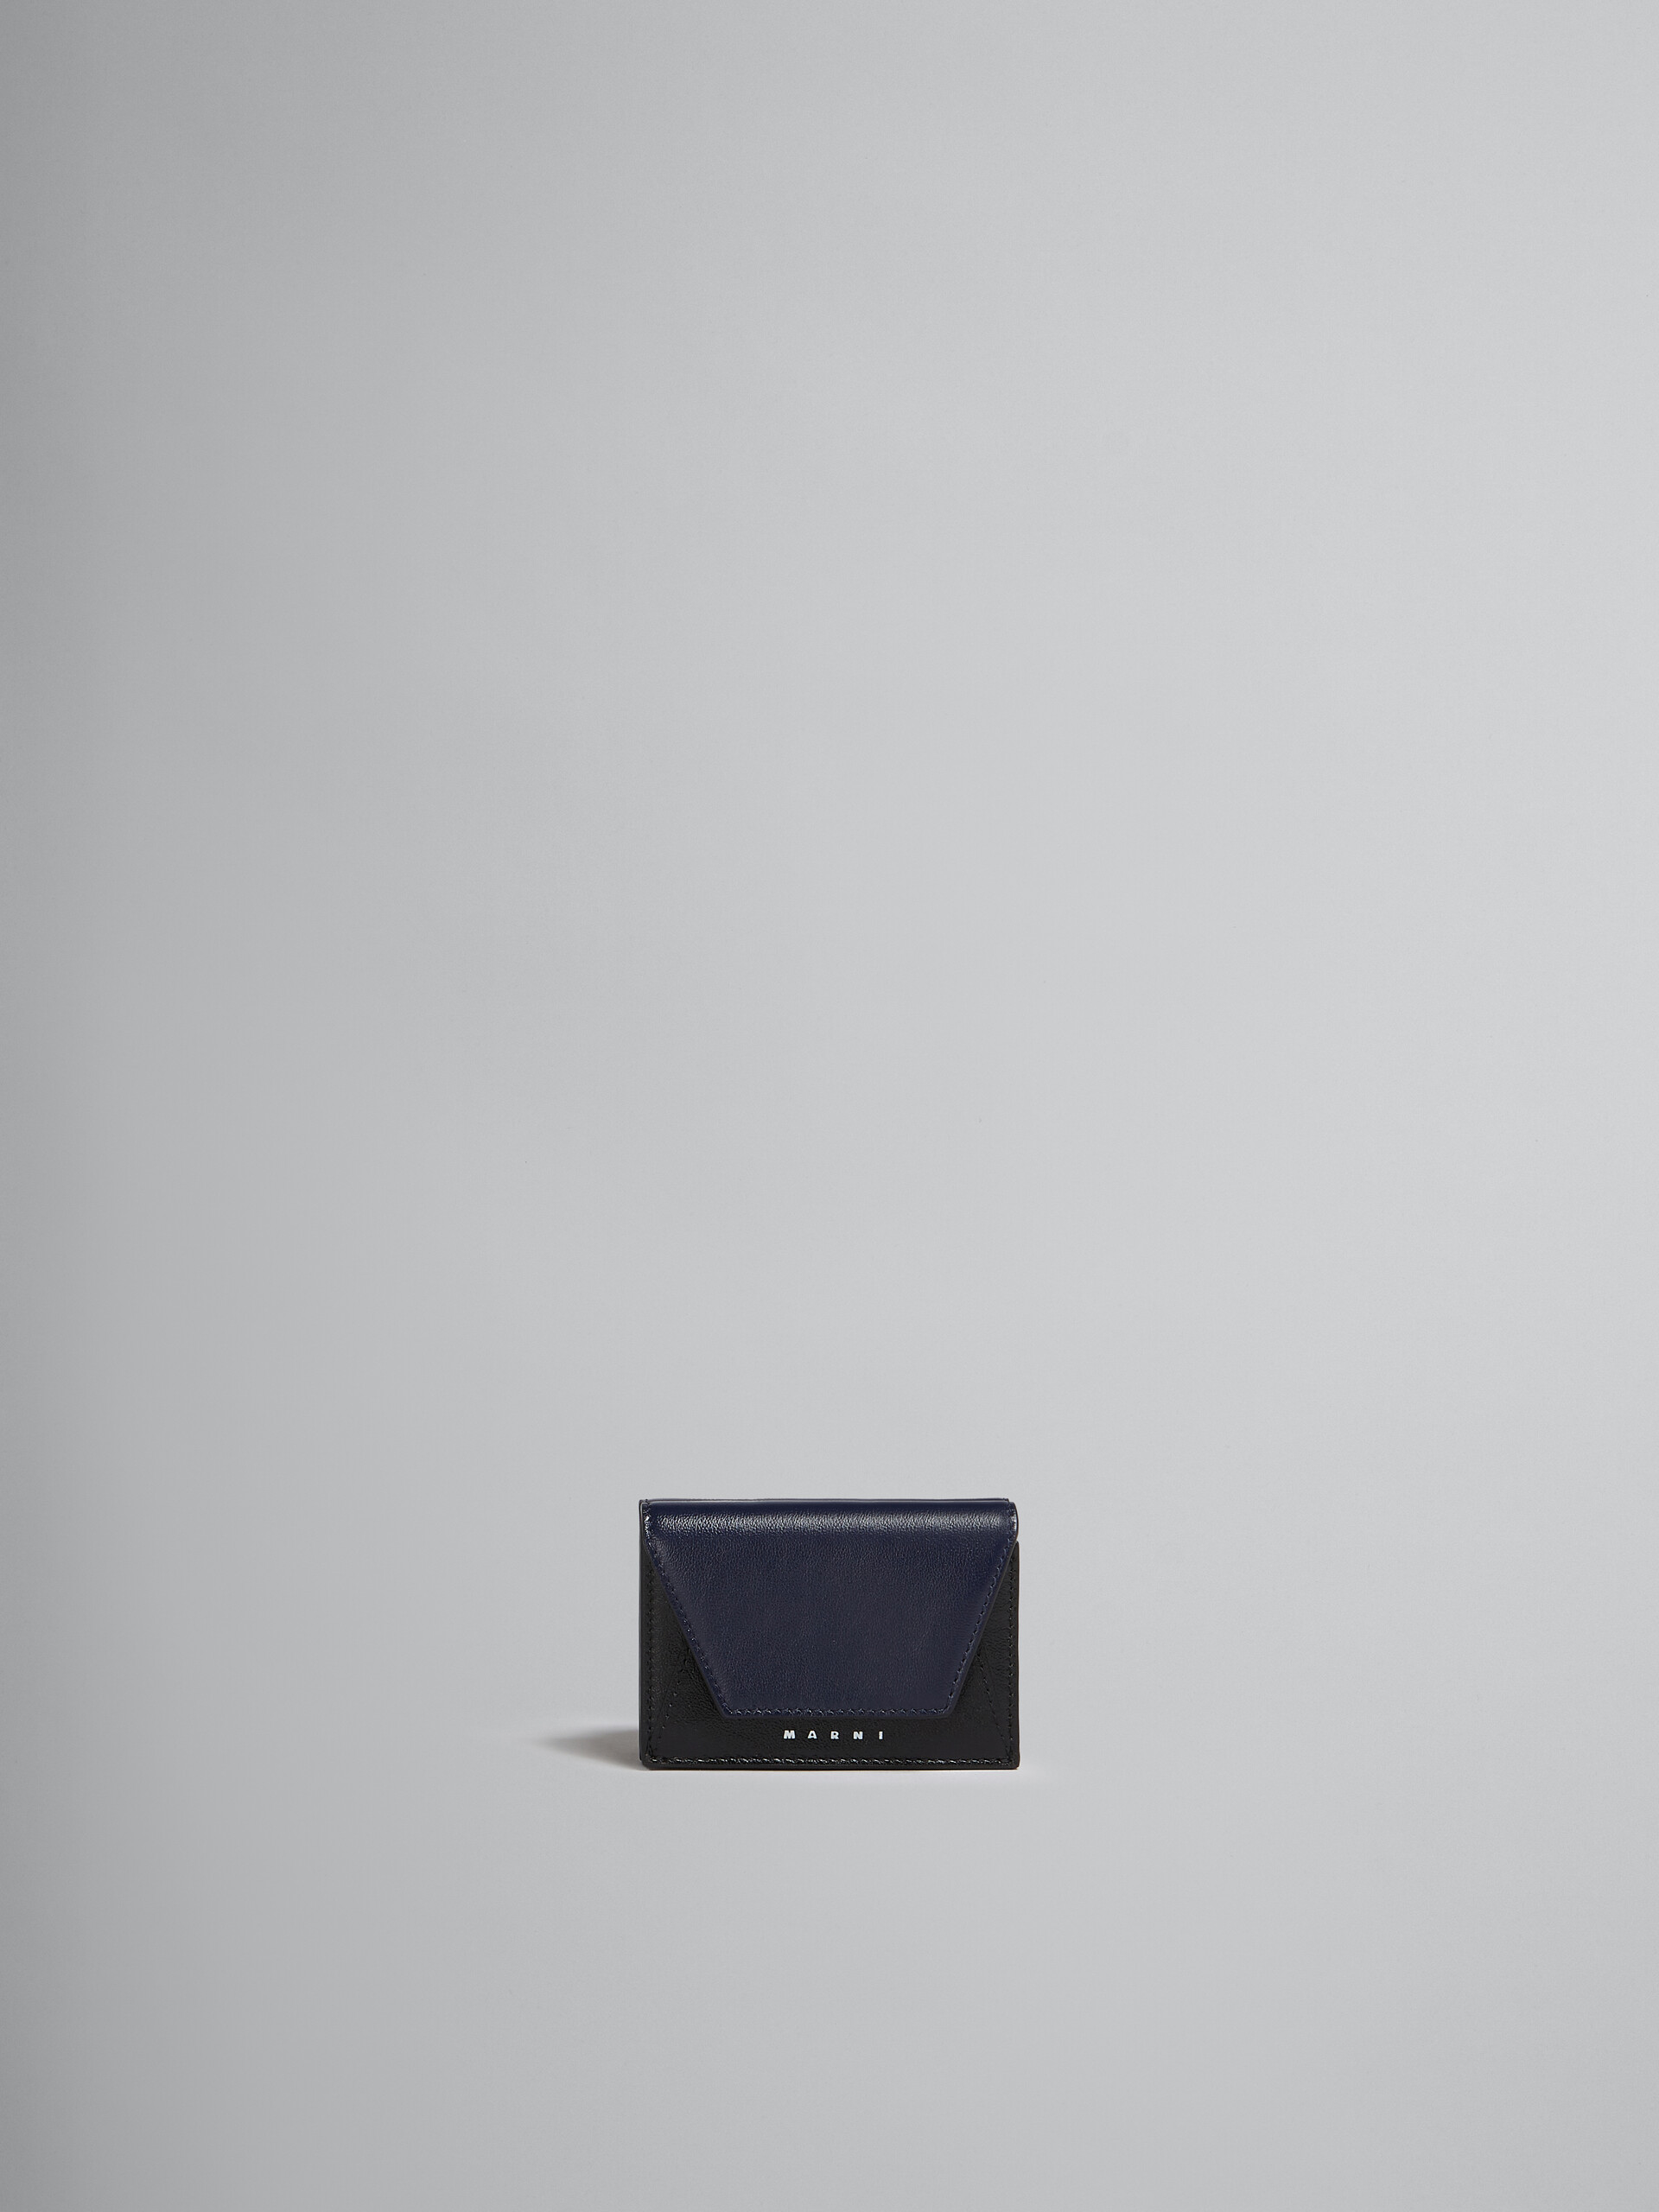 ネイビーブルーとブラック レザー製三つ折りウォレット - 財布 - Image 1